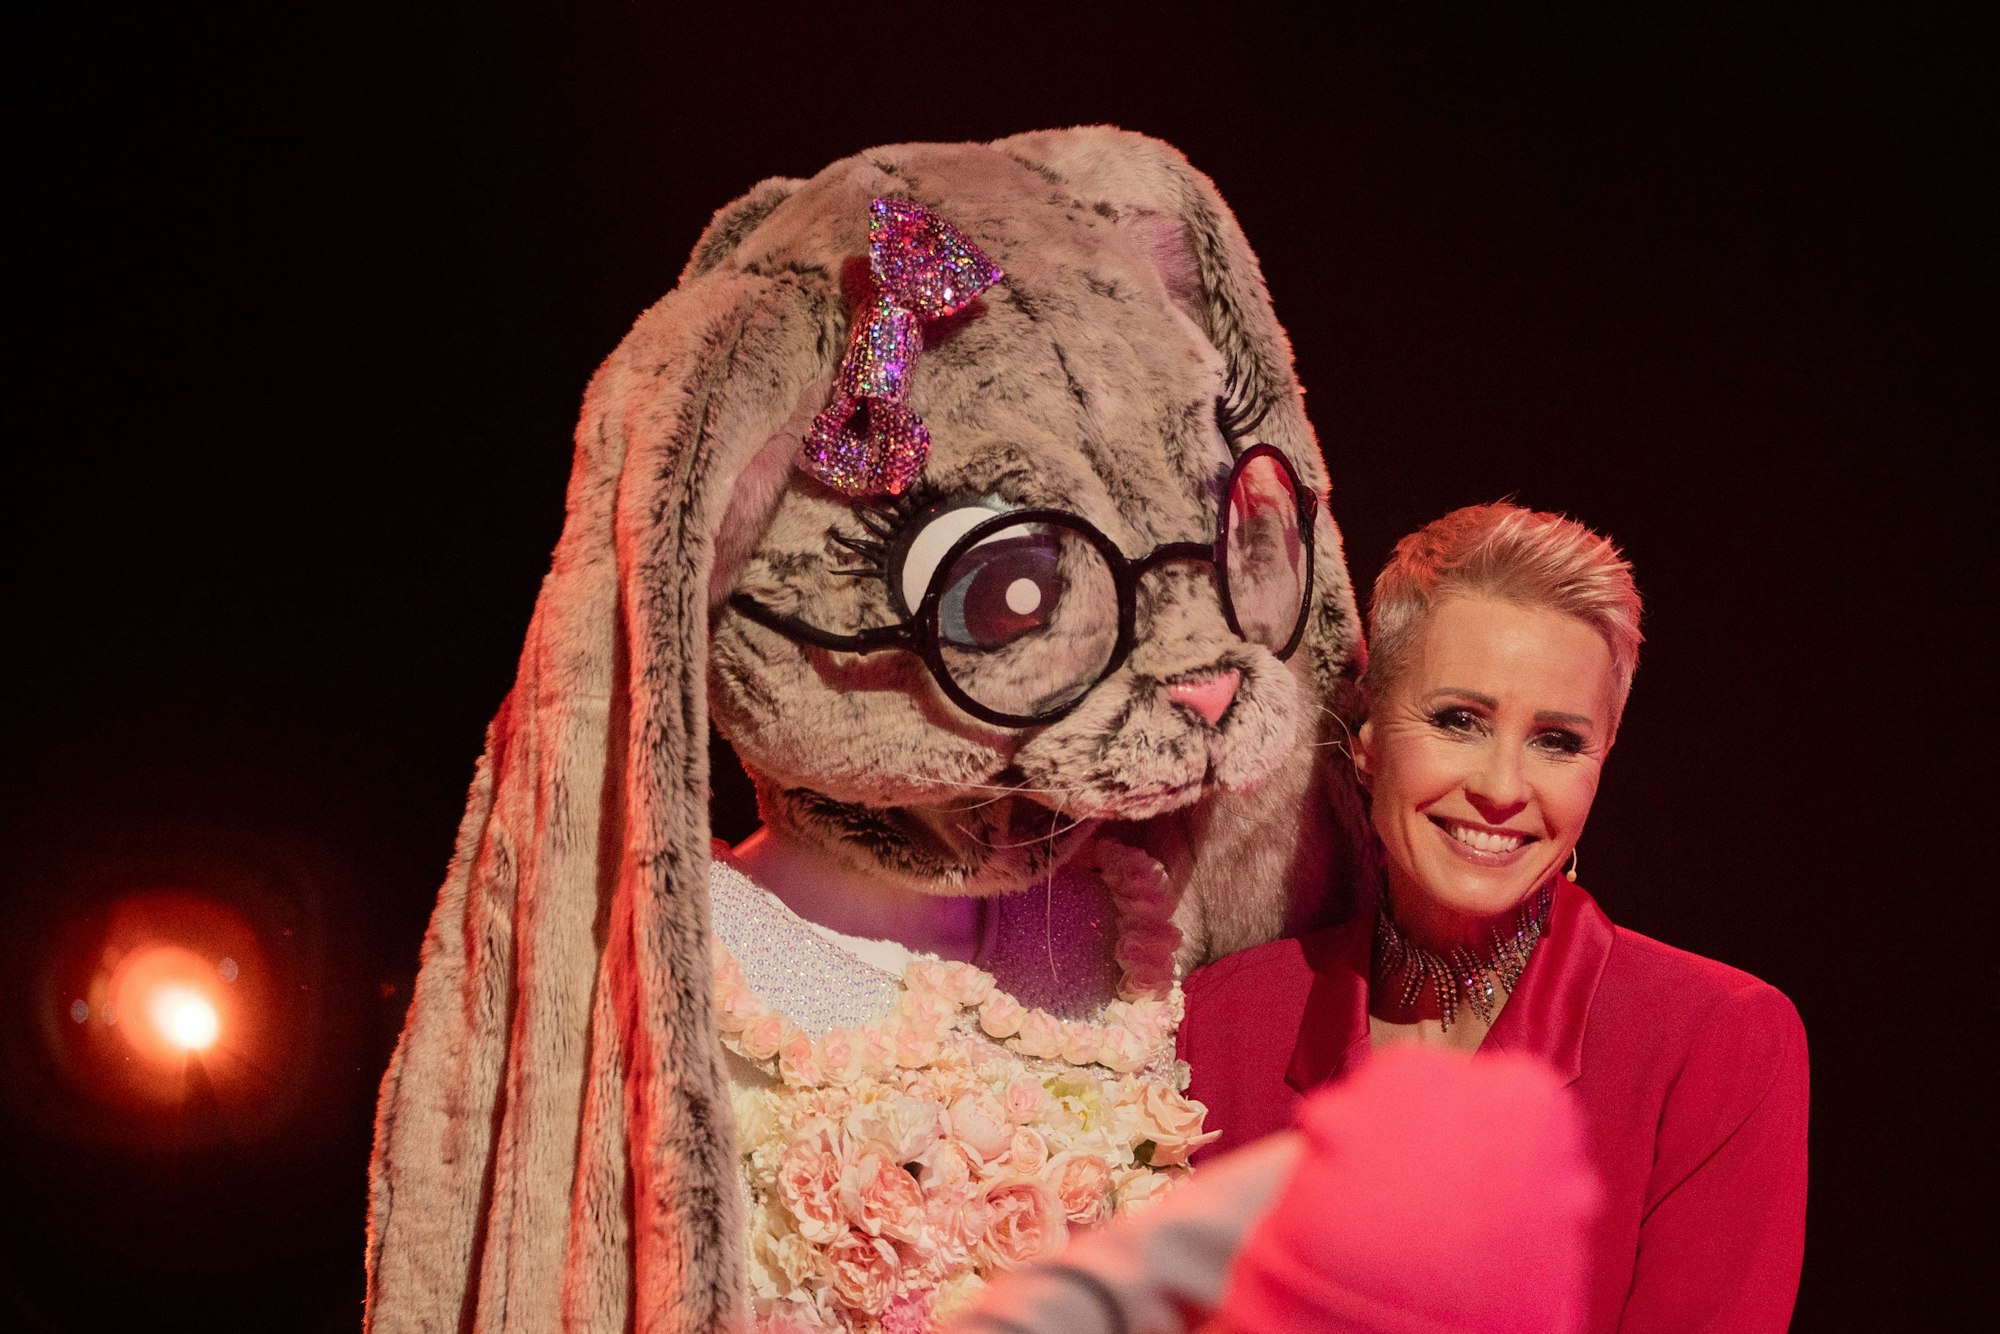 Sonja Zietlow aus dem Rateteam steht neben ihrer Figur "Der Hase" in der Prosieben-Show "The Masked Singer" auf der Bühne.